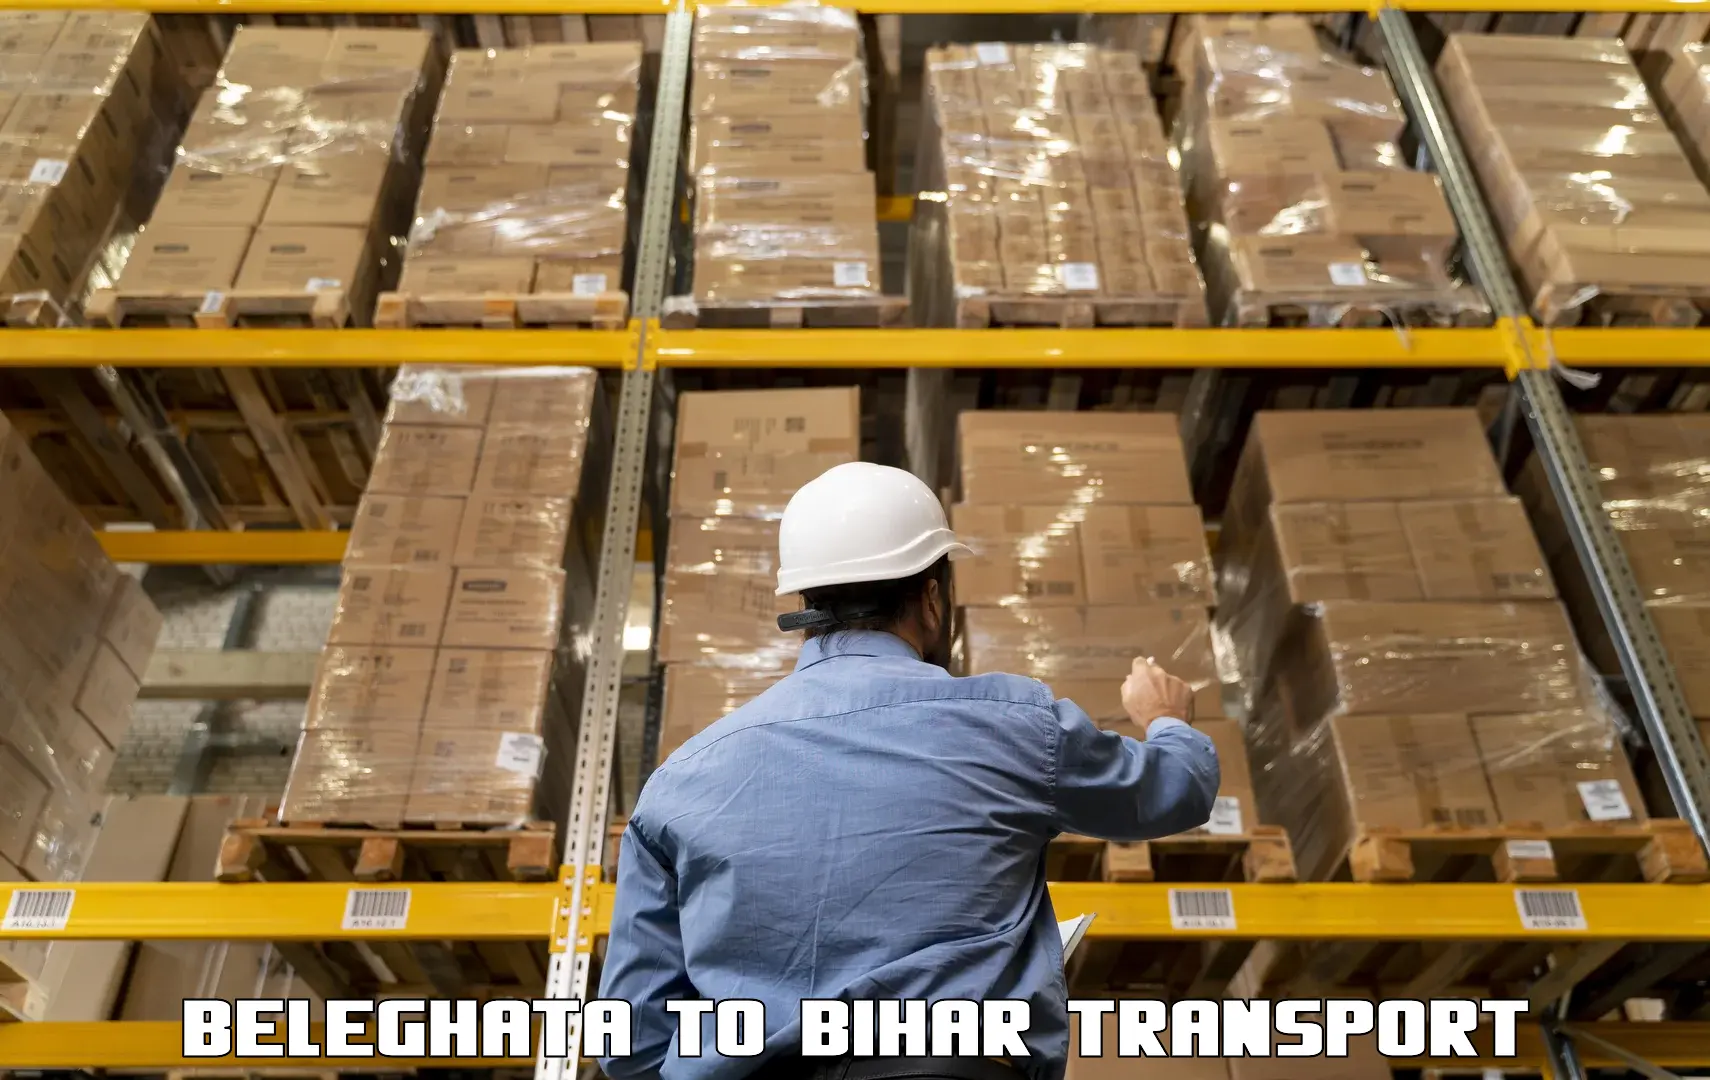 Goods delivery service in Beleghata to Bihar